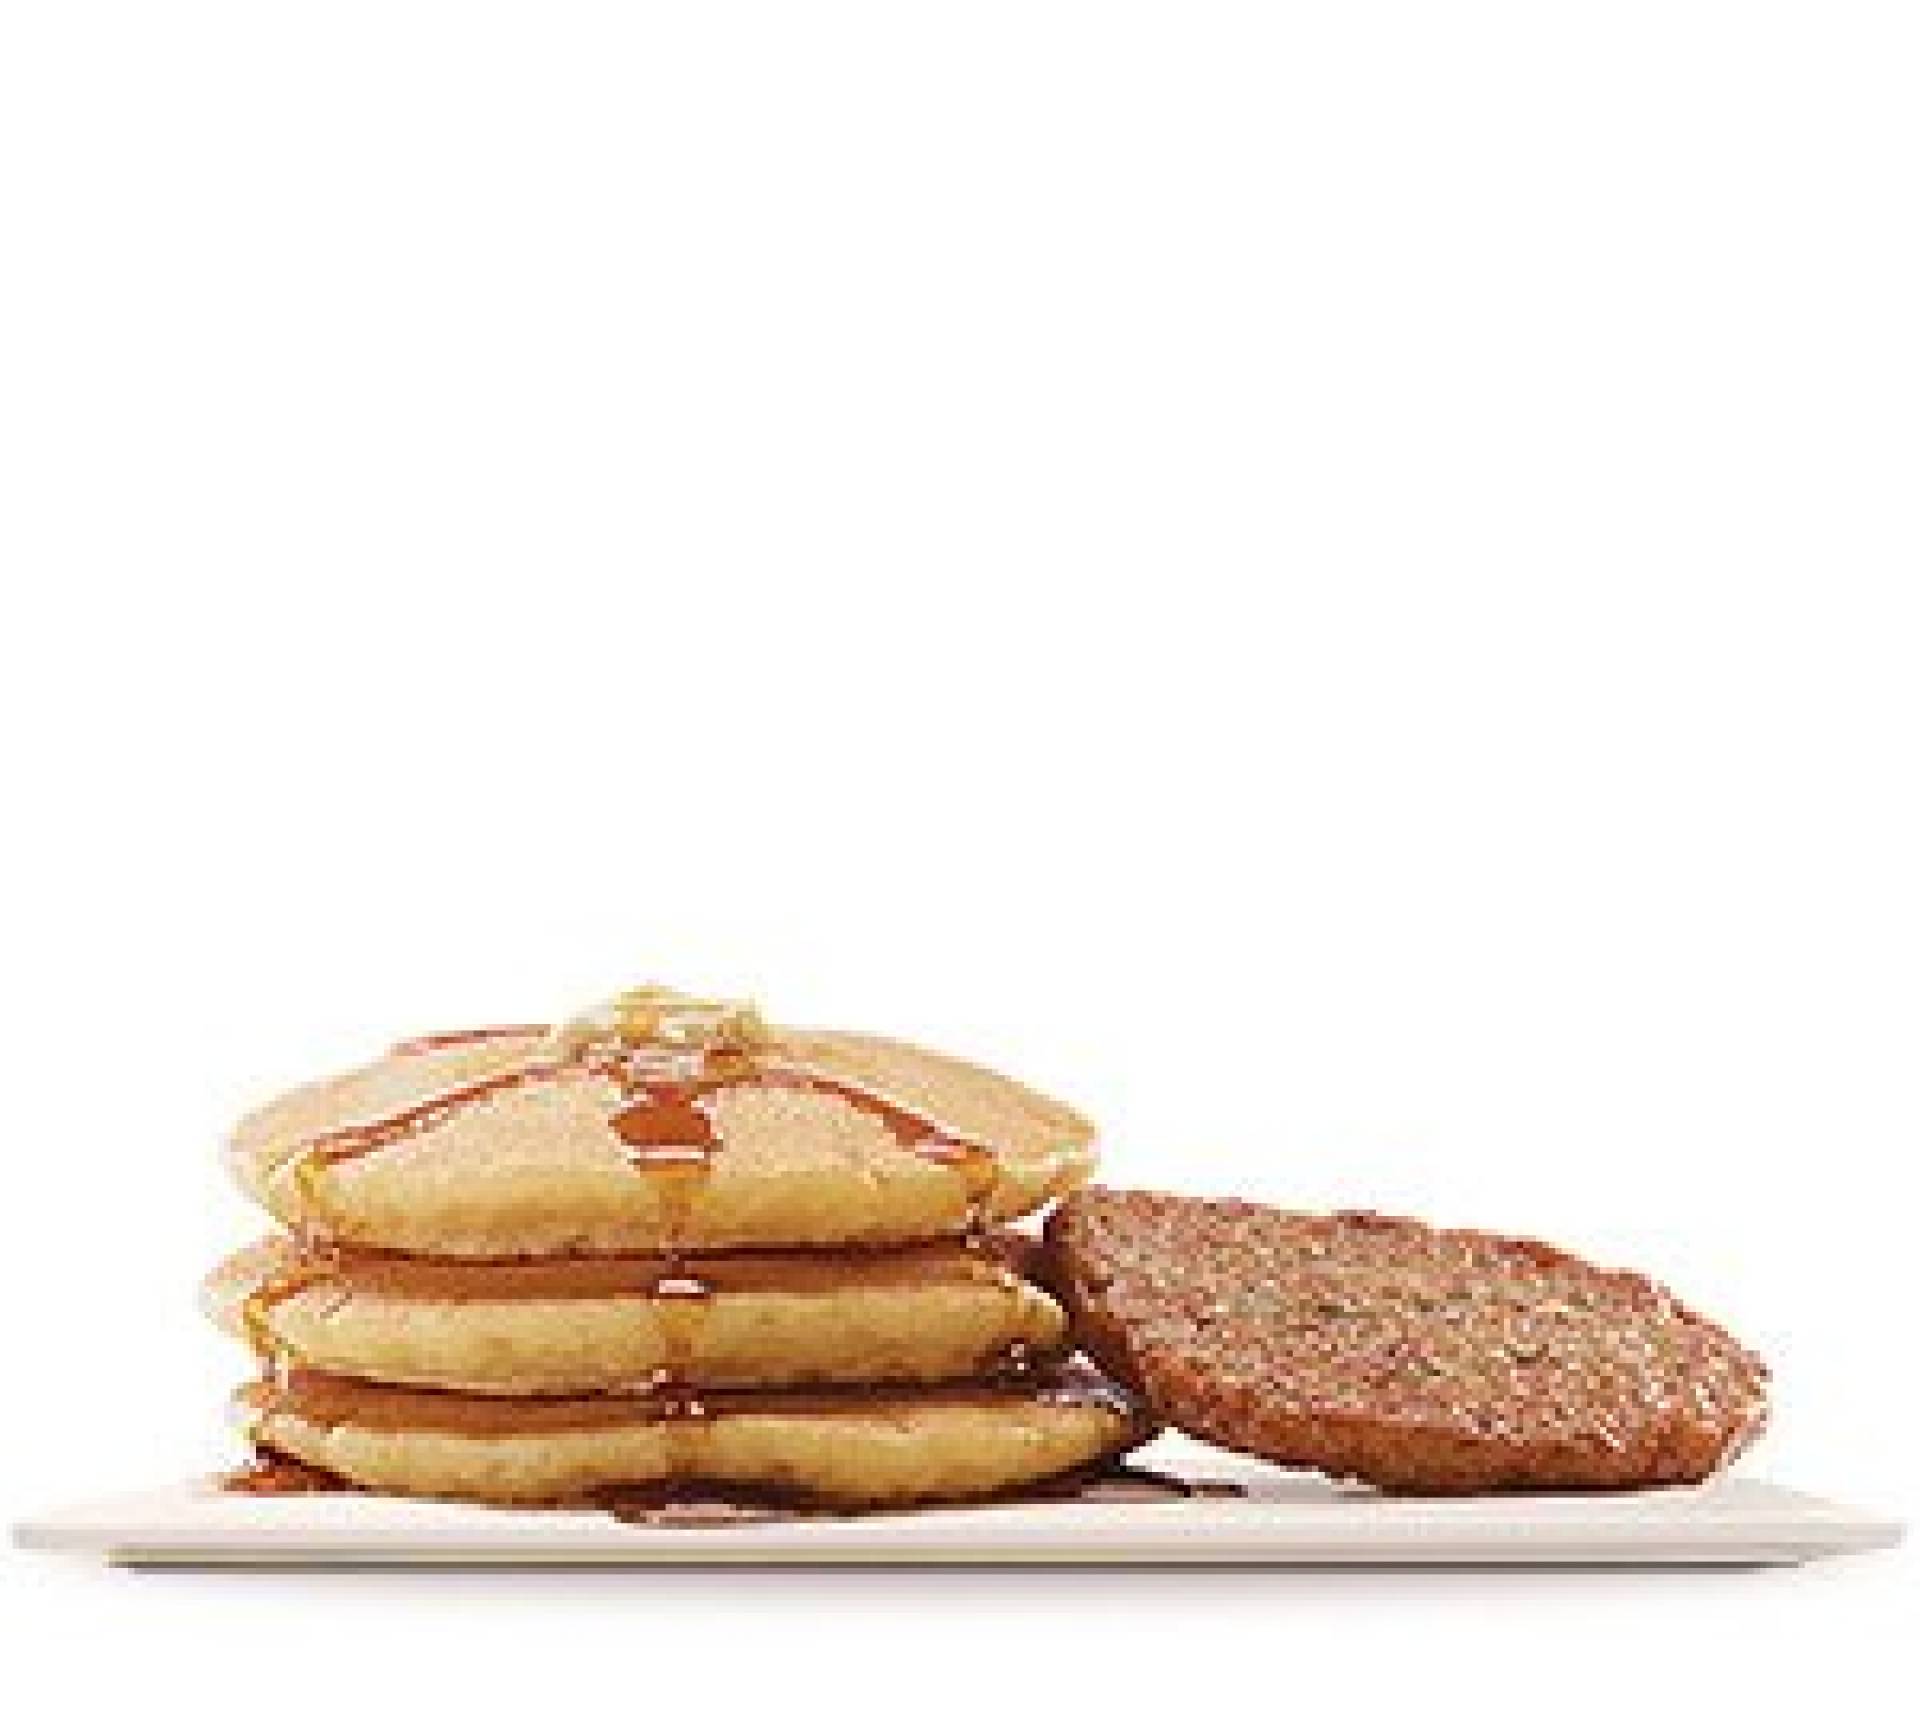 Pancakes with a Sausage Patty